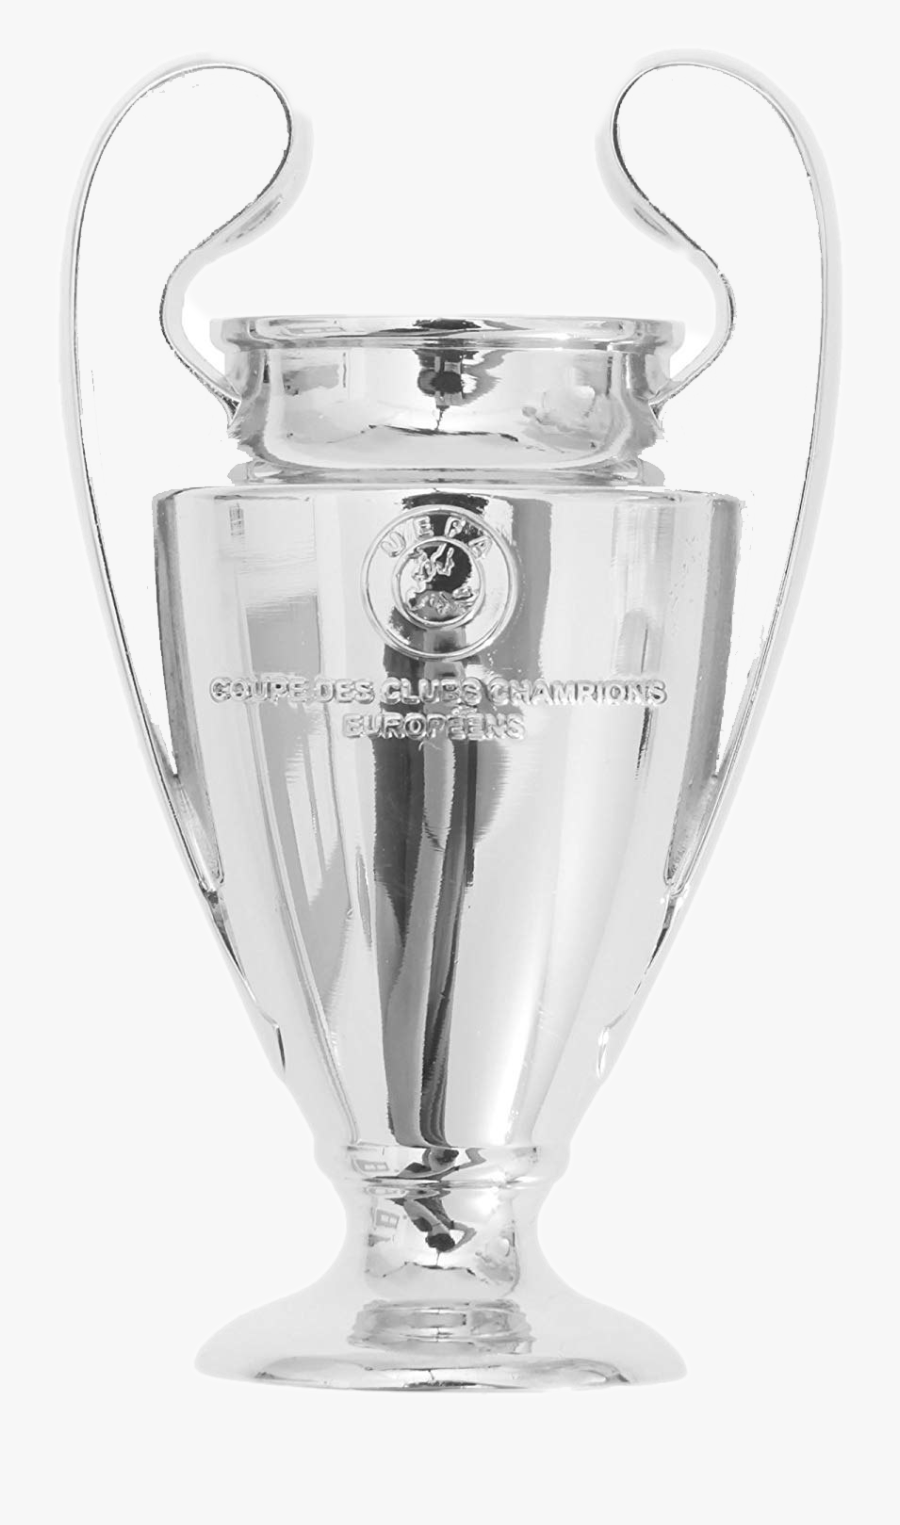 Champions League Trophy Png, Transparent Clipart